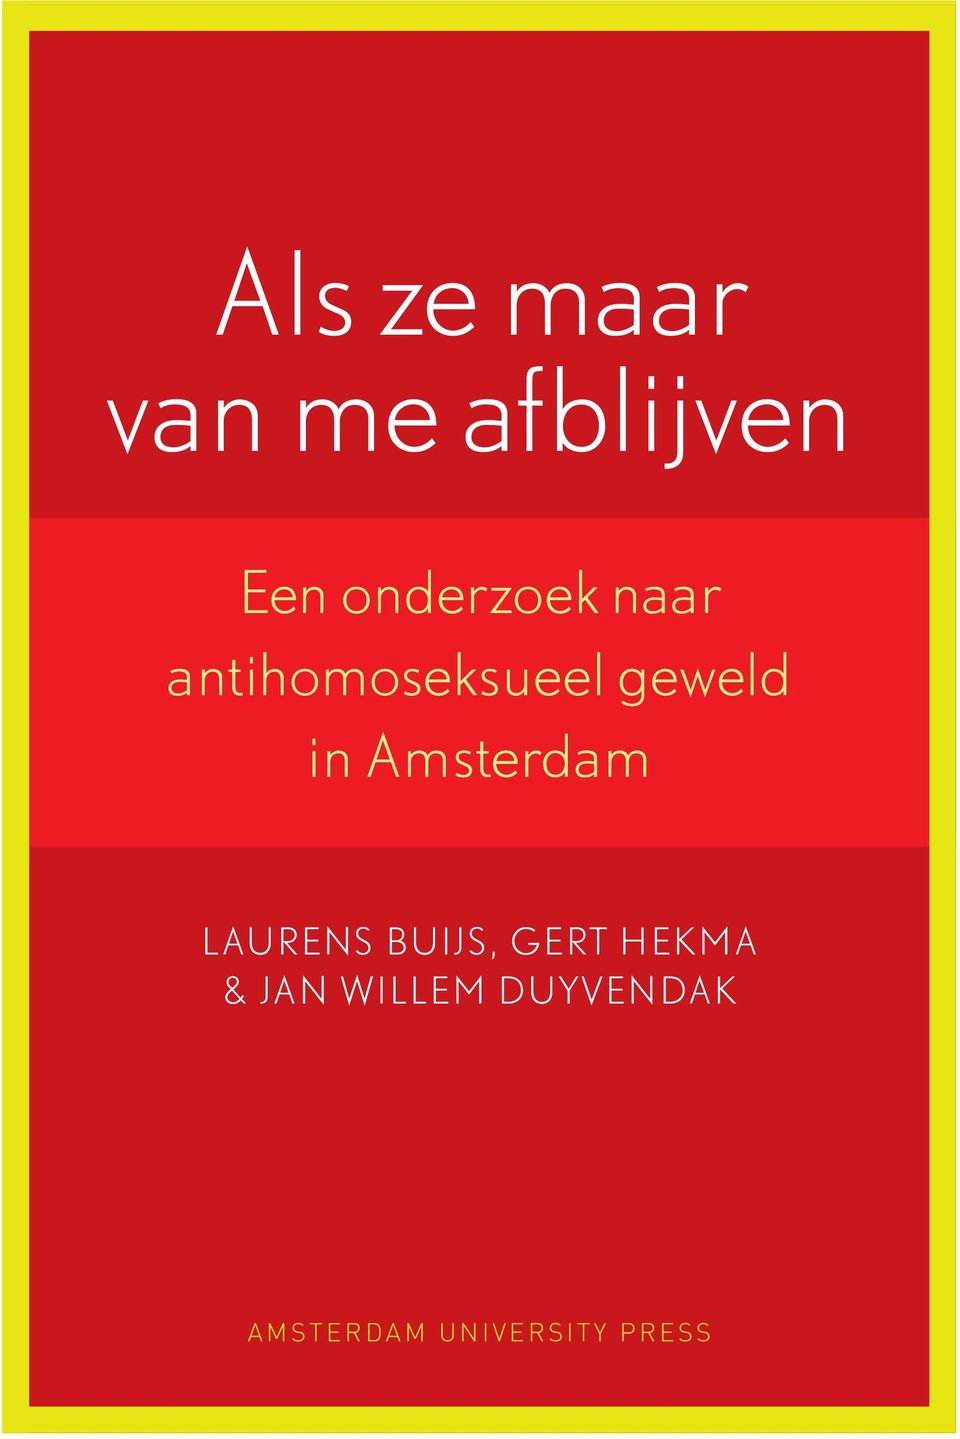 in Amsterdam Laurens Buijs, Gert Hekma